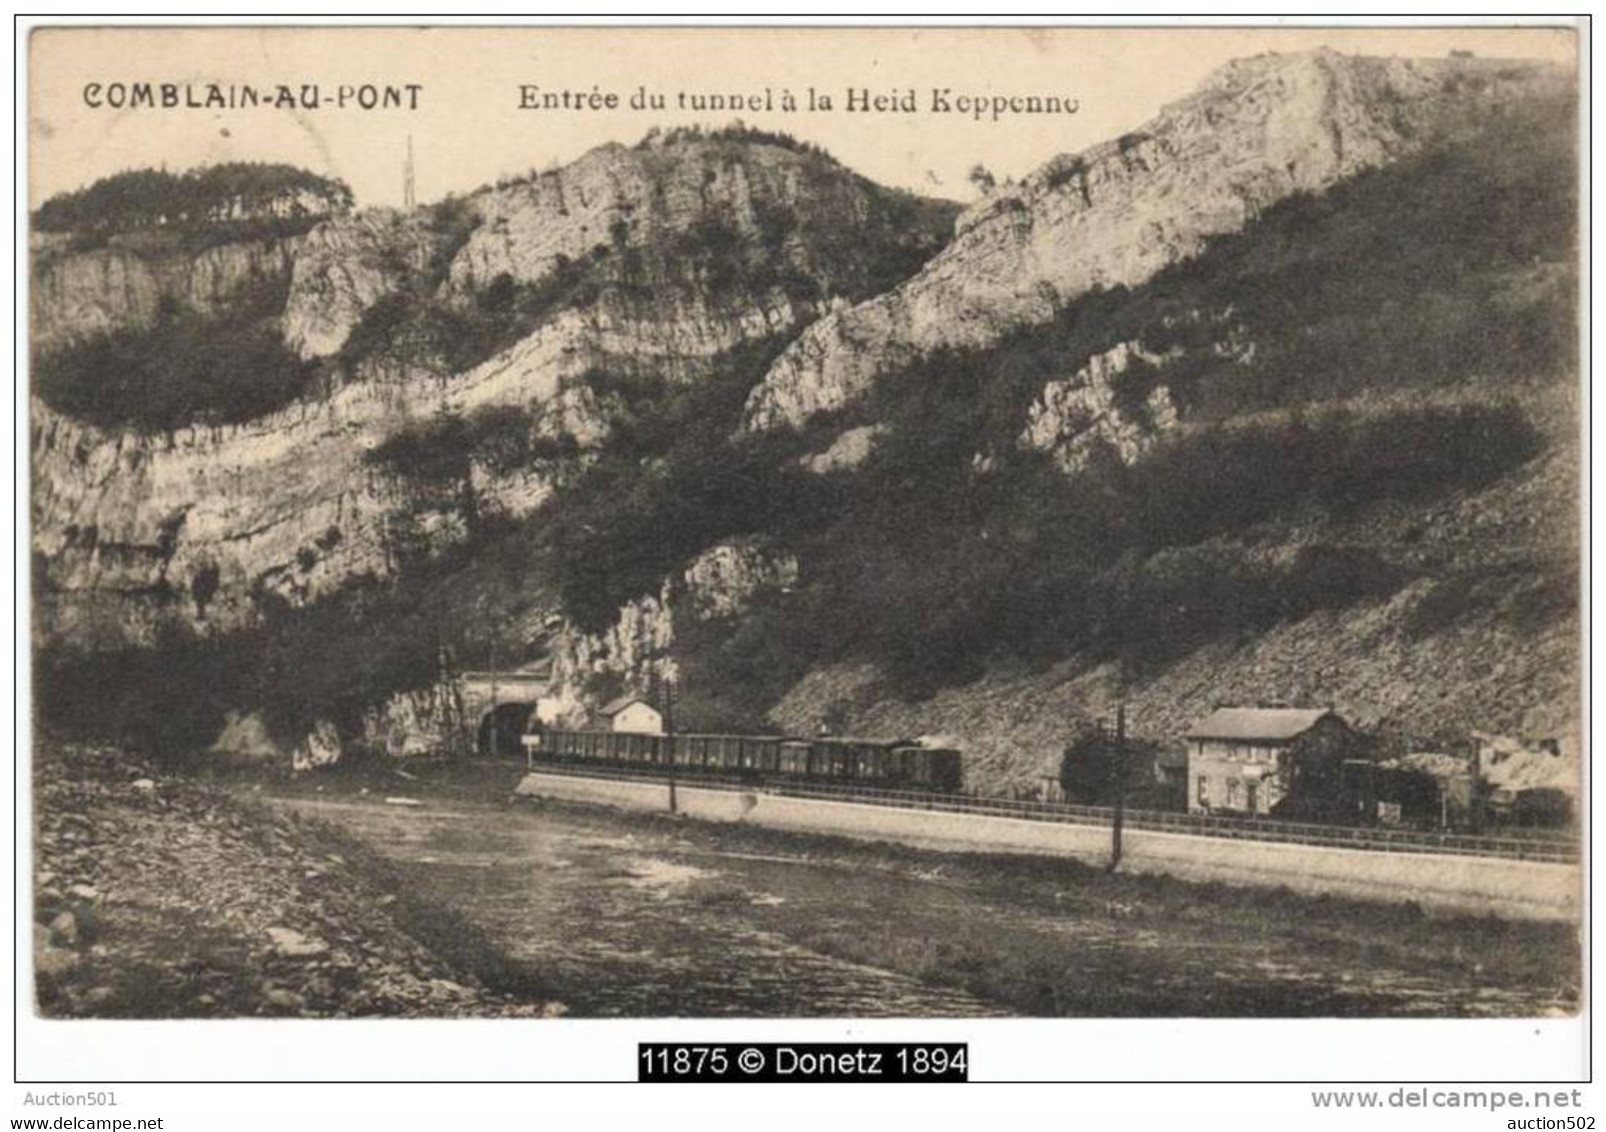 11875g TRAIN à VAPEUR - Entrée Du Tunnel à La Heid Keppenne - Combalin-au-Pont - 1913 - Comblain-au-Pont